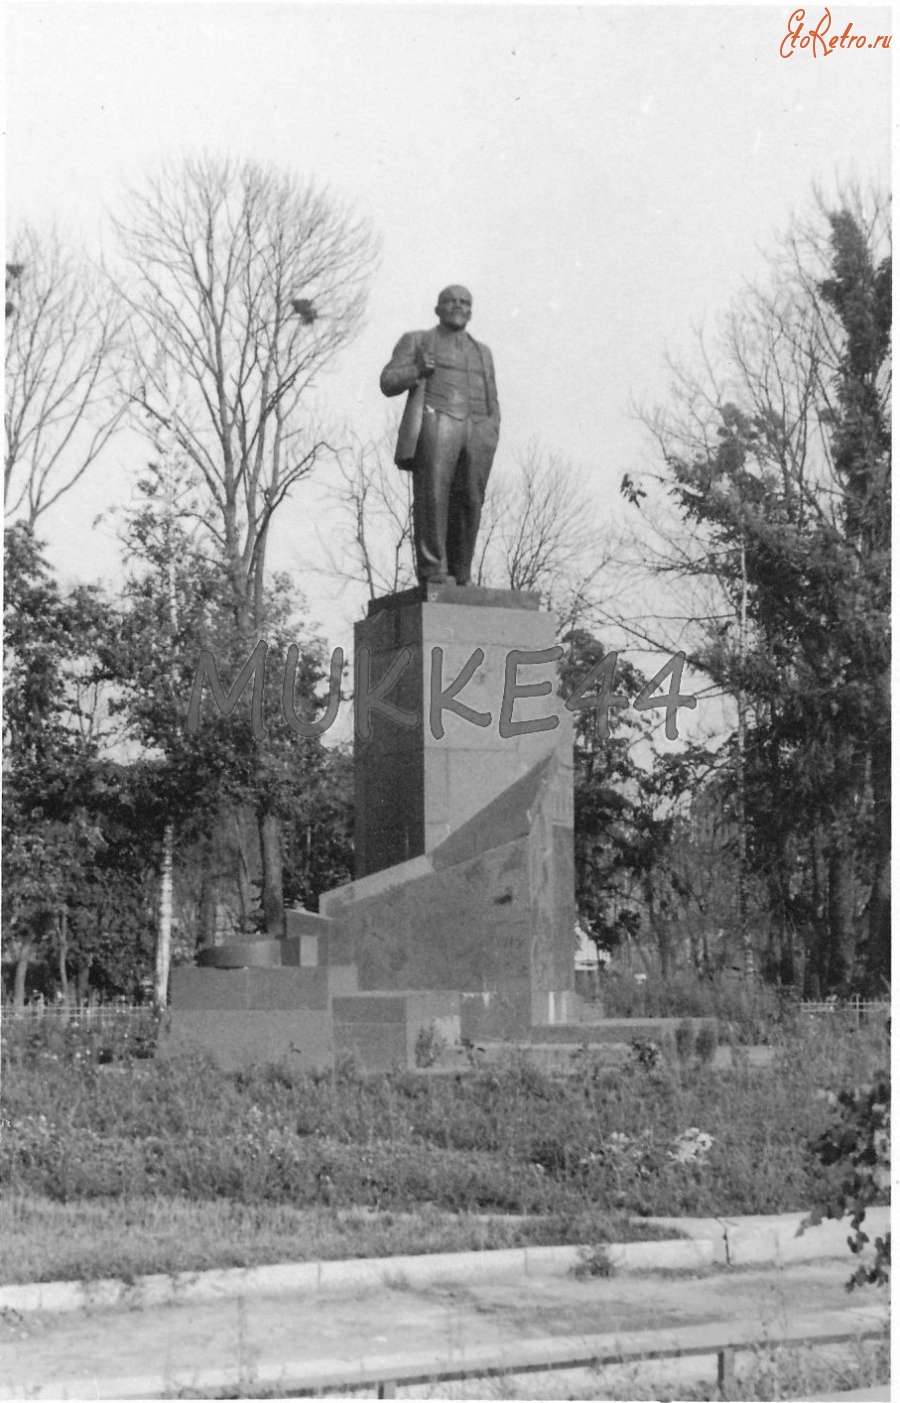 Великий Новгород - Памятник Ленину в Великом Новгороде перед уничтожением немецкими оккупантами, 1941 г.